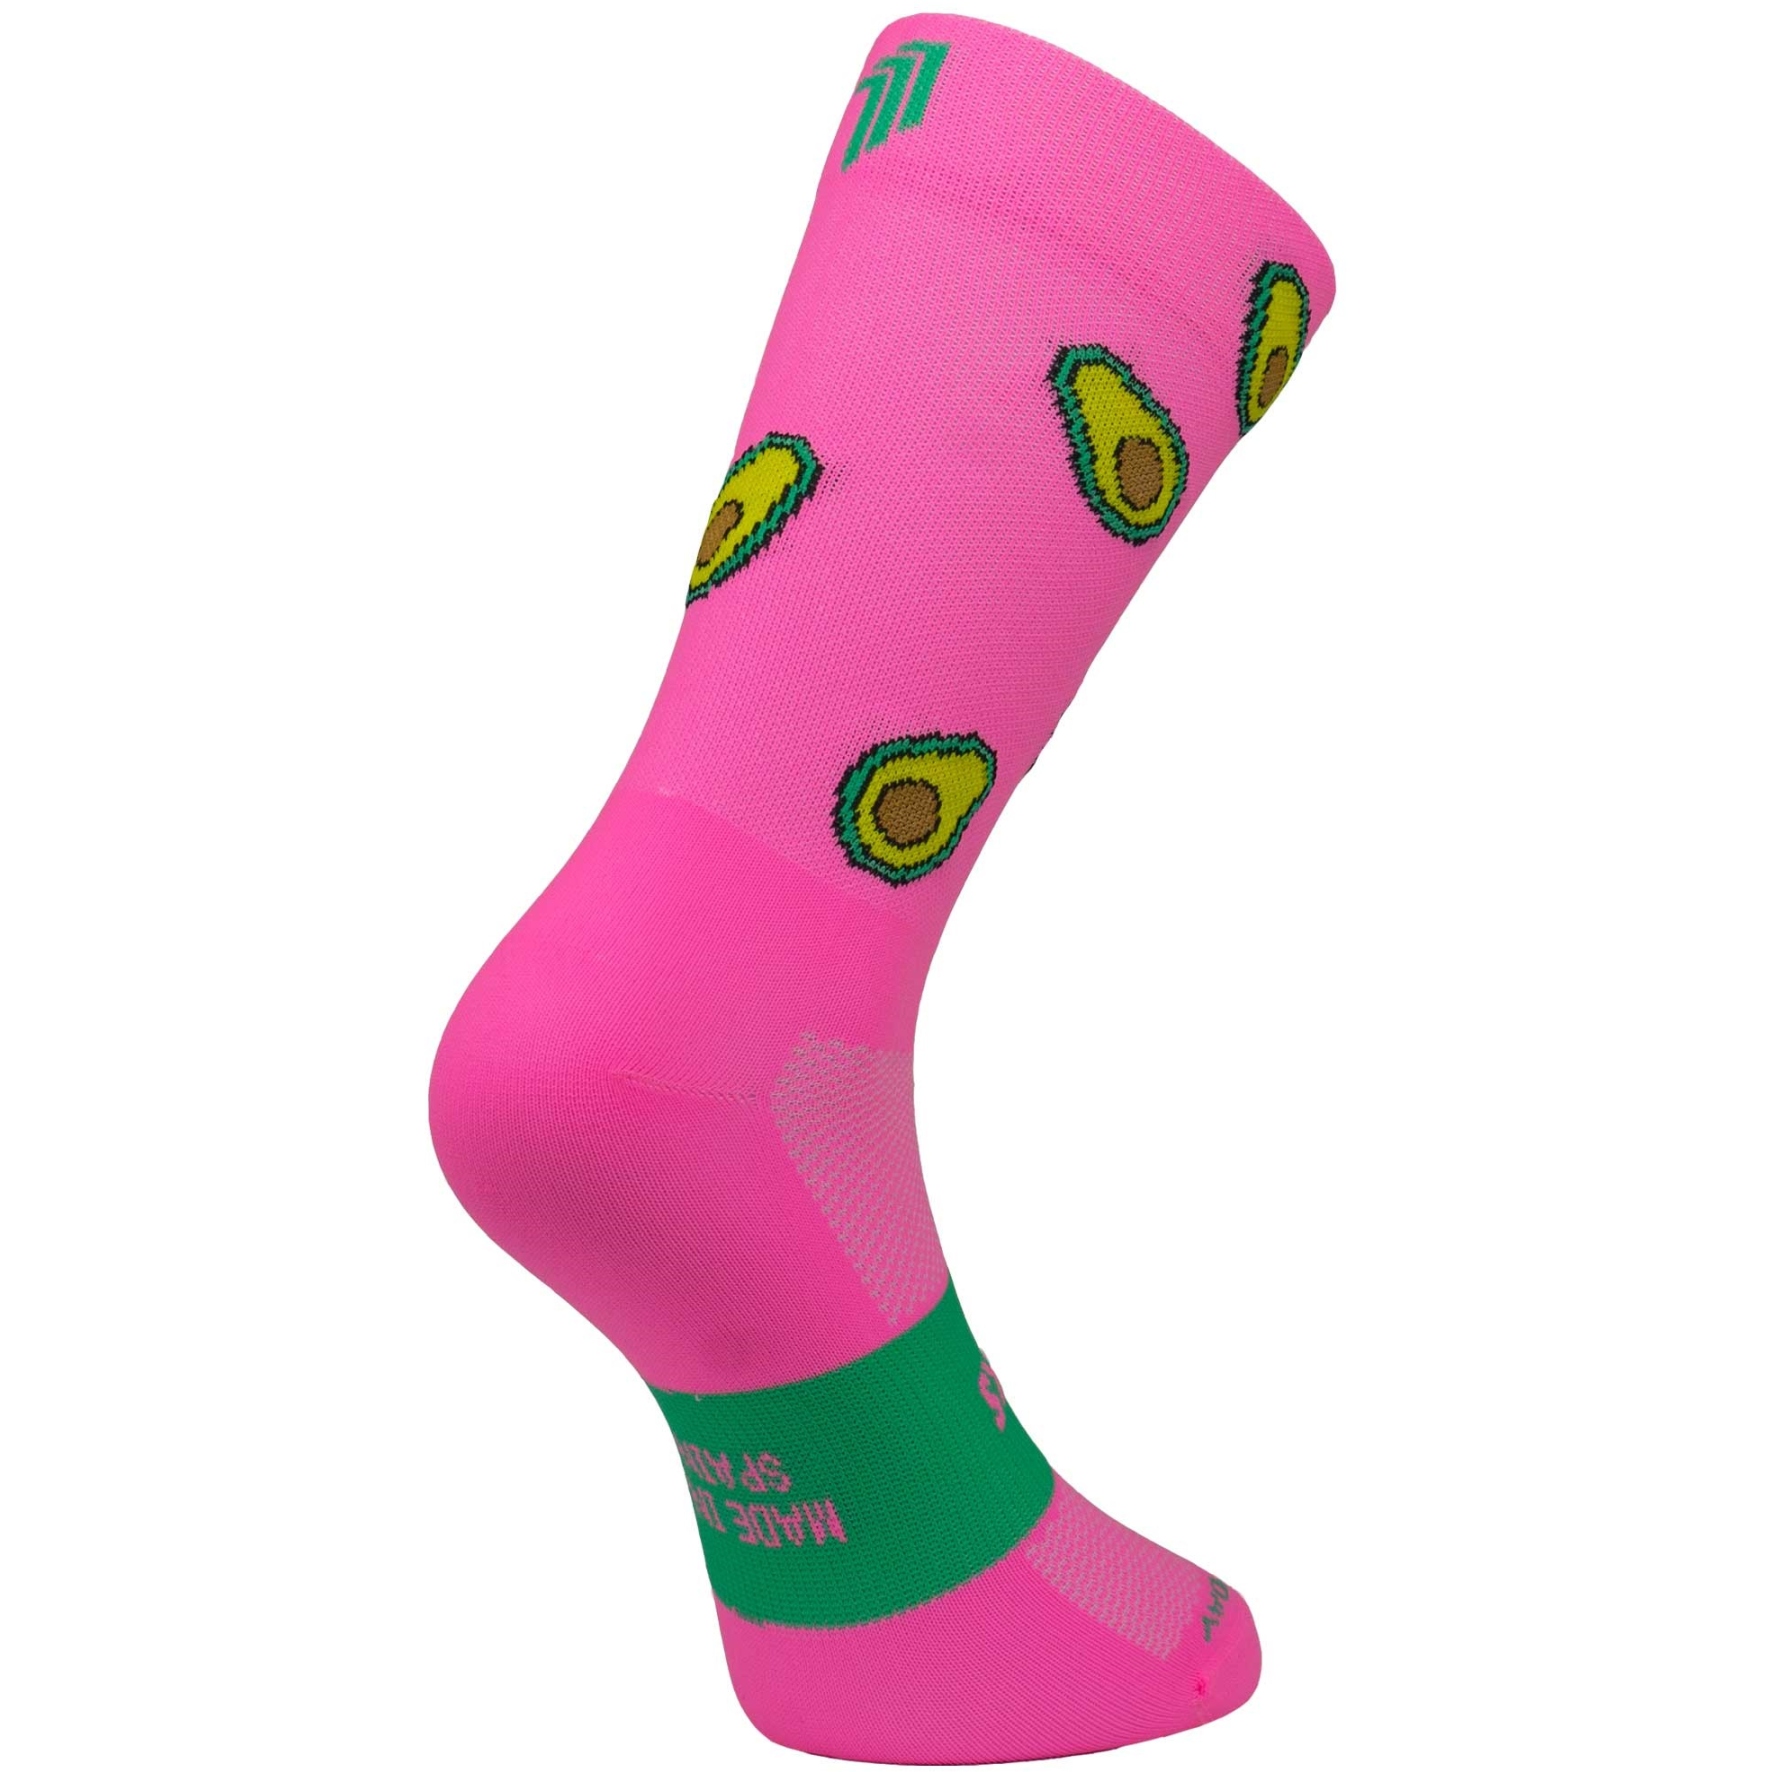 Produktbild von SPORCKS Cycling Socken - Avocados